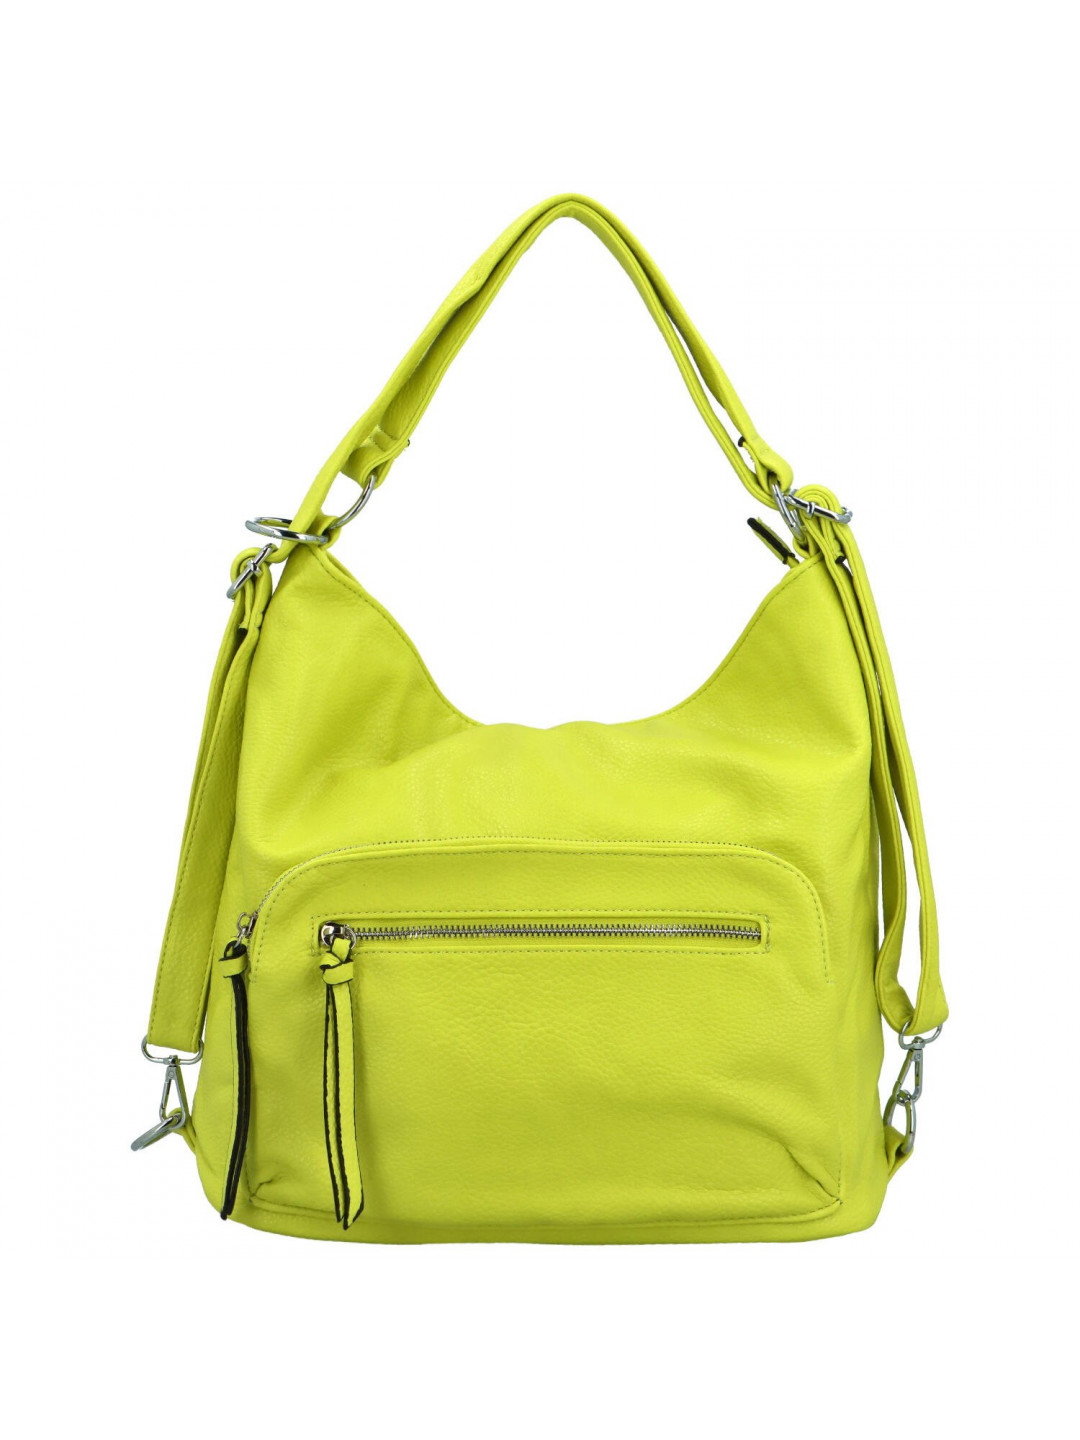 Dámský kabelko batoh žlutý – Firenze Sorrena